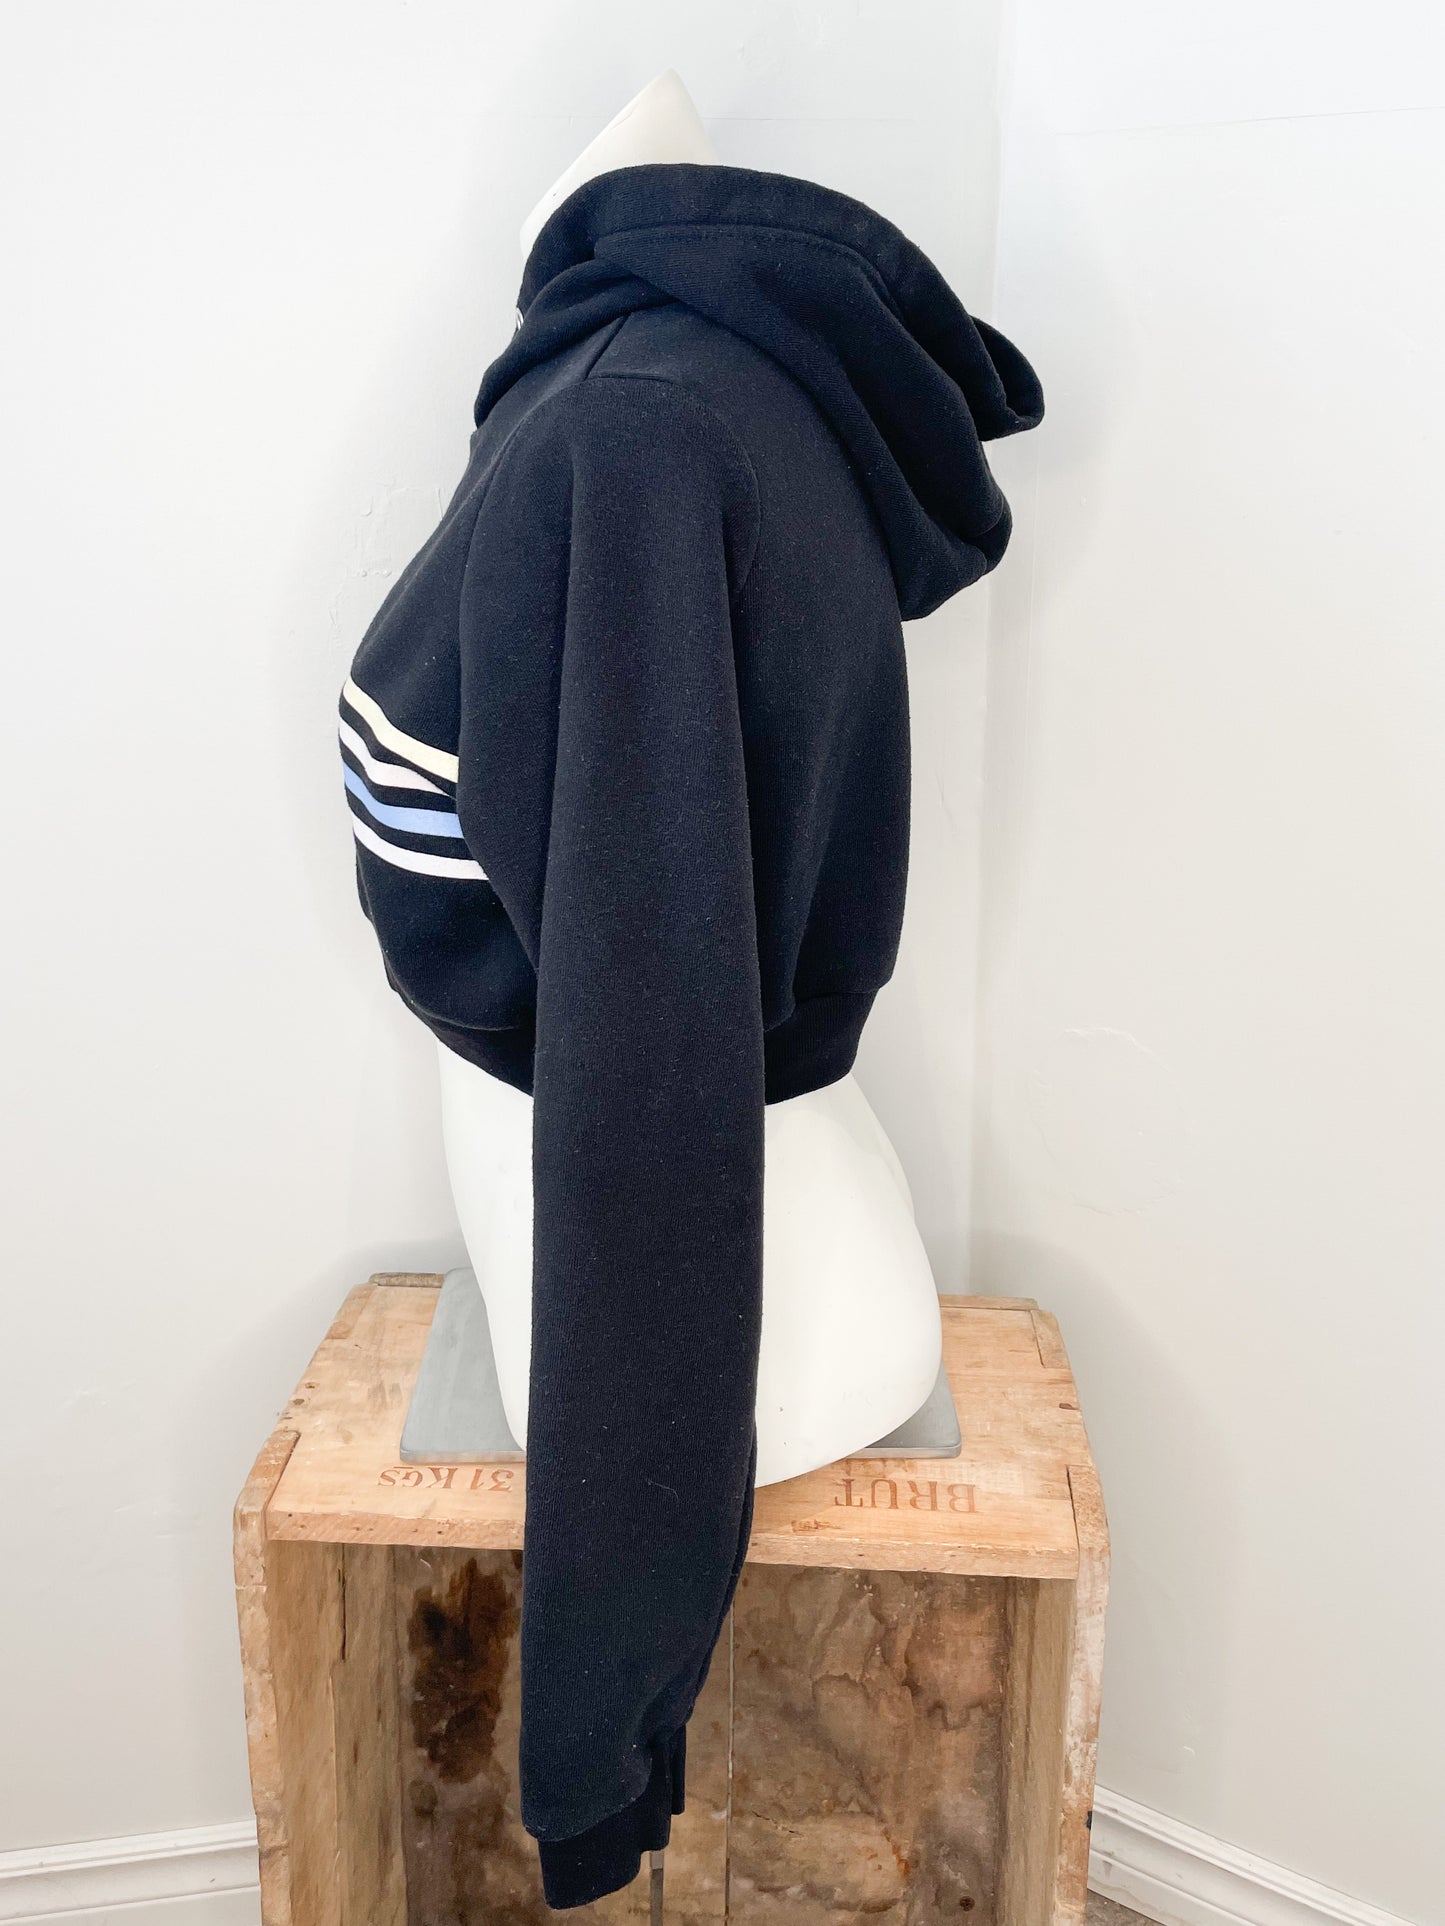 Weekend Edition Black Stripe Cropped Hoodie Sweater - Medium